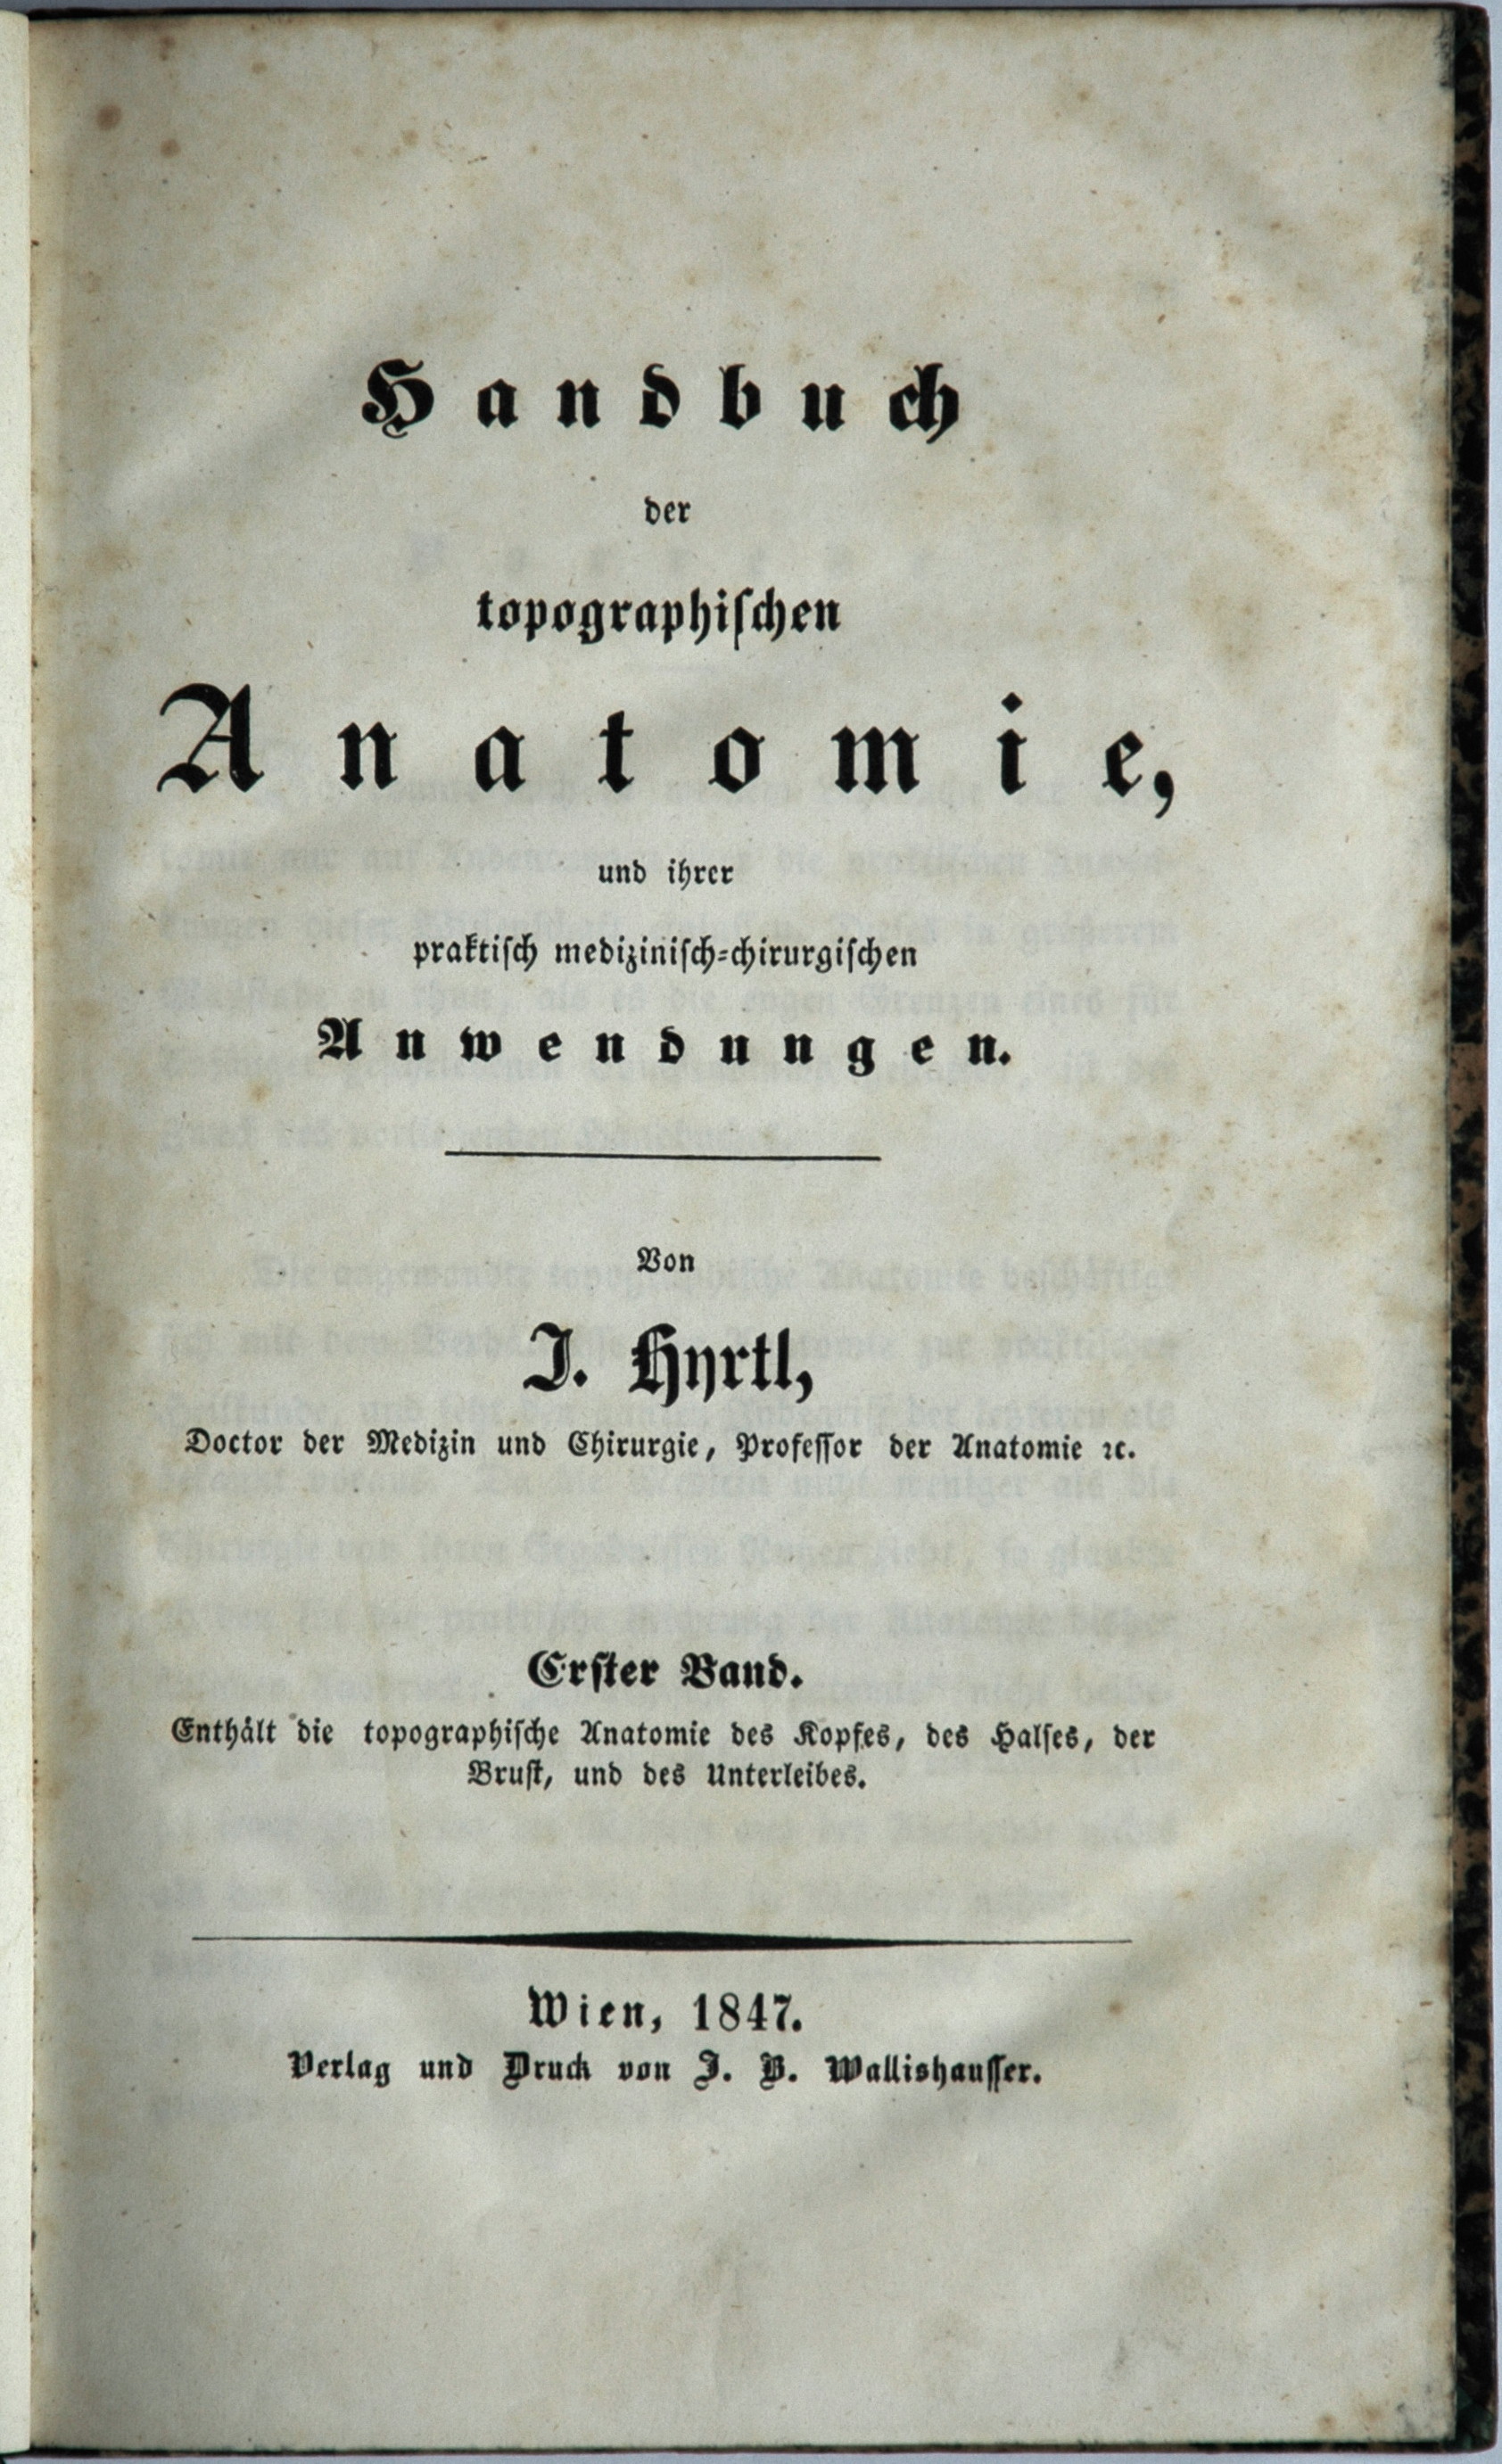 Josef Hyrtl Handbuch der topographischen Anatomie